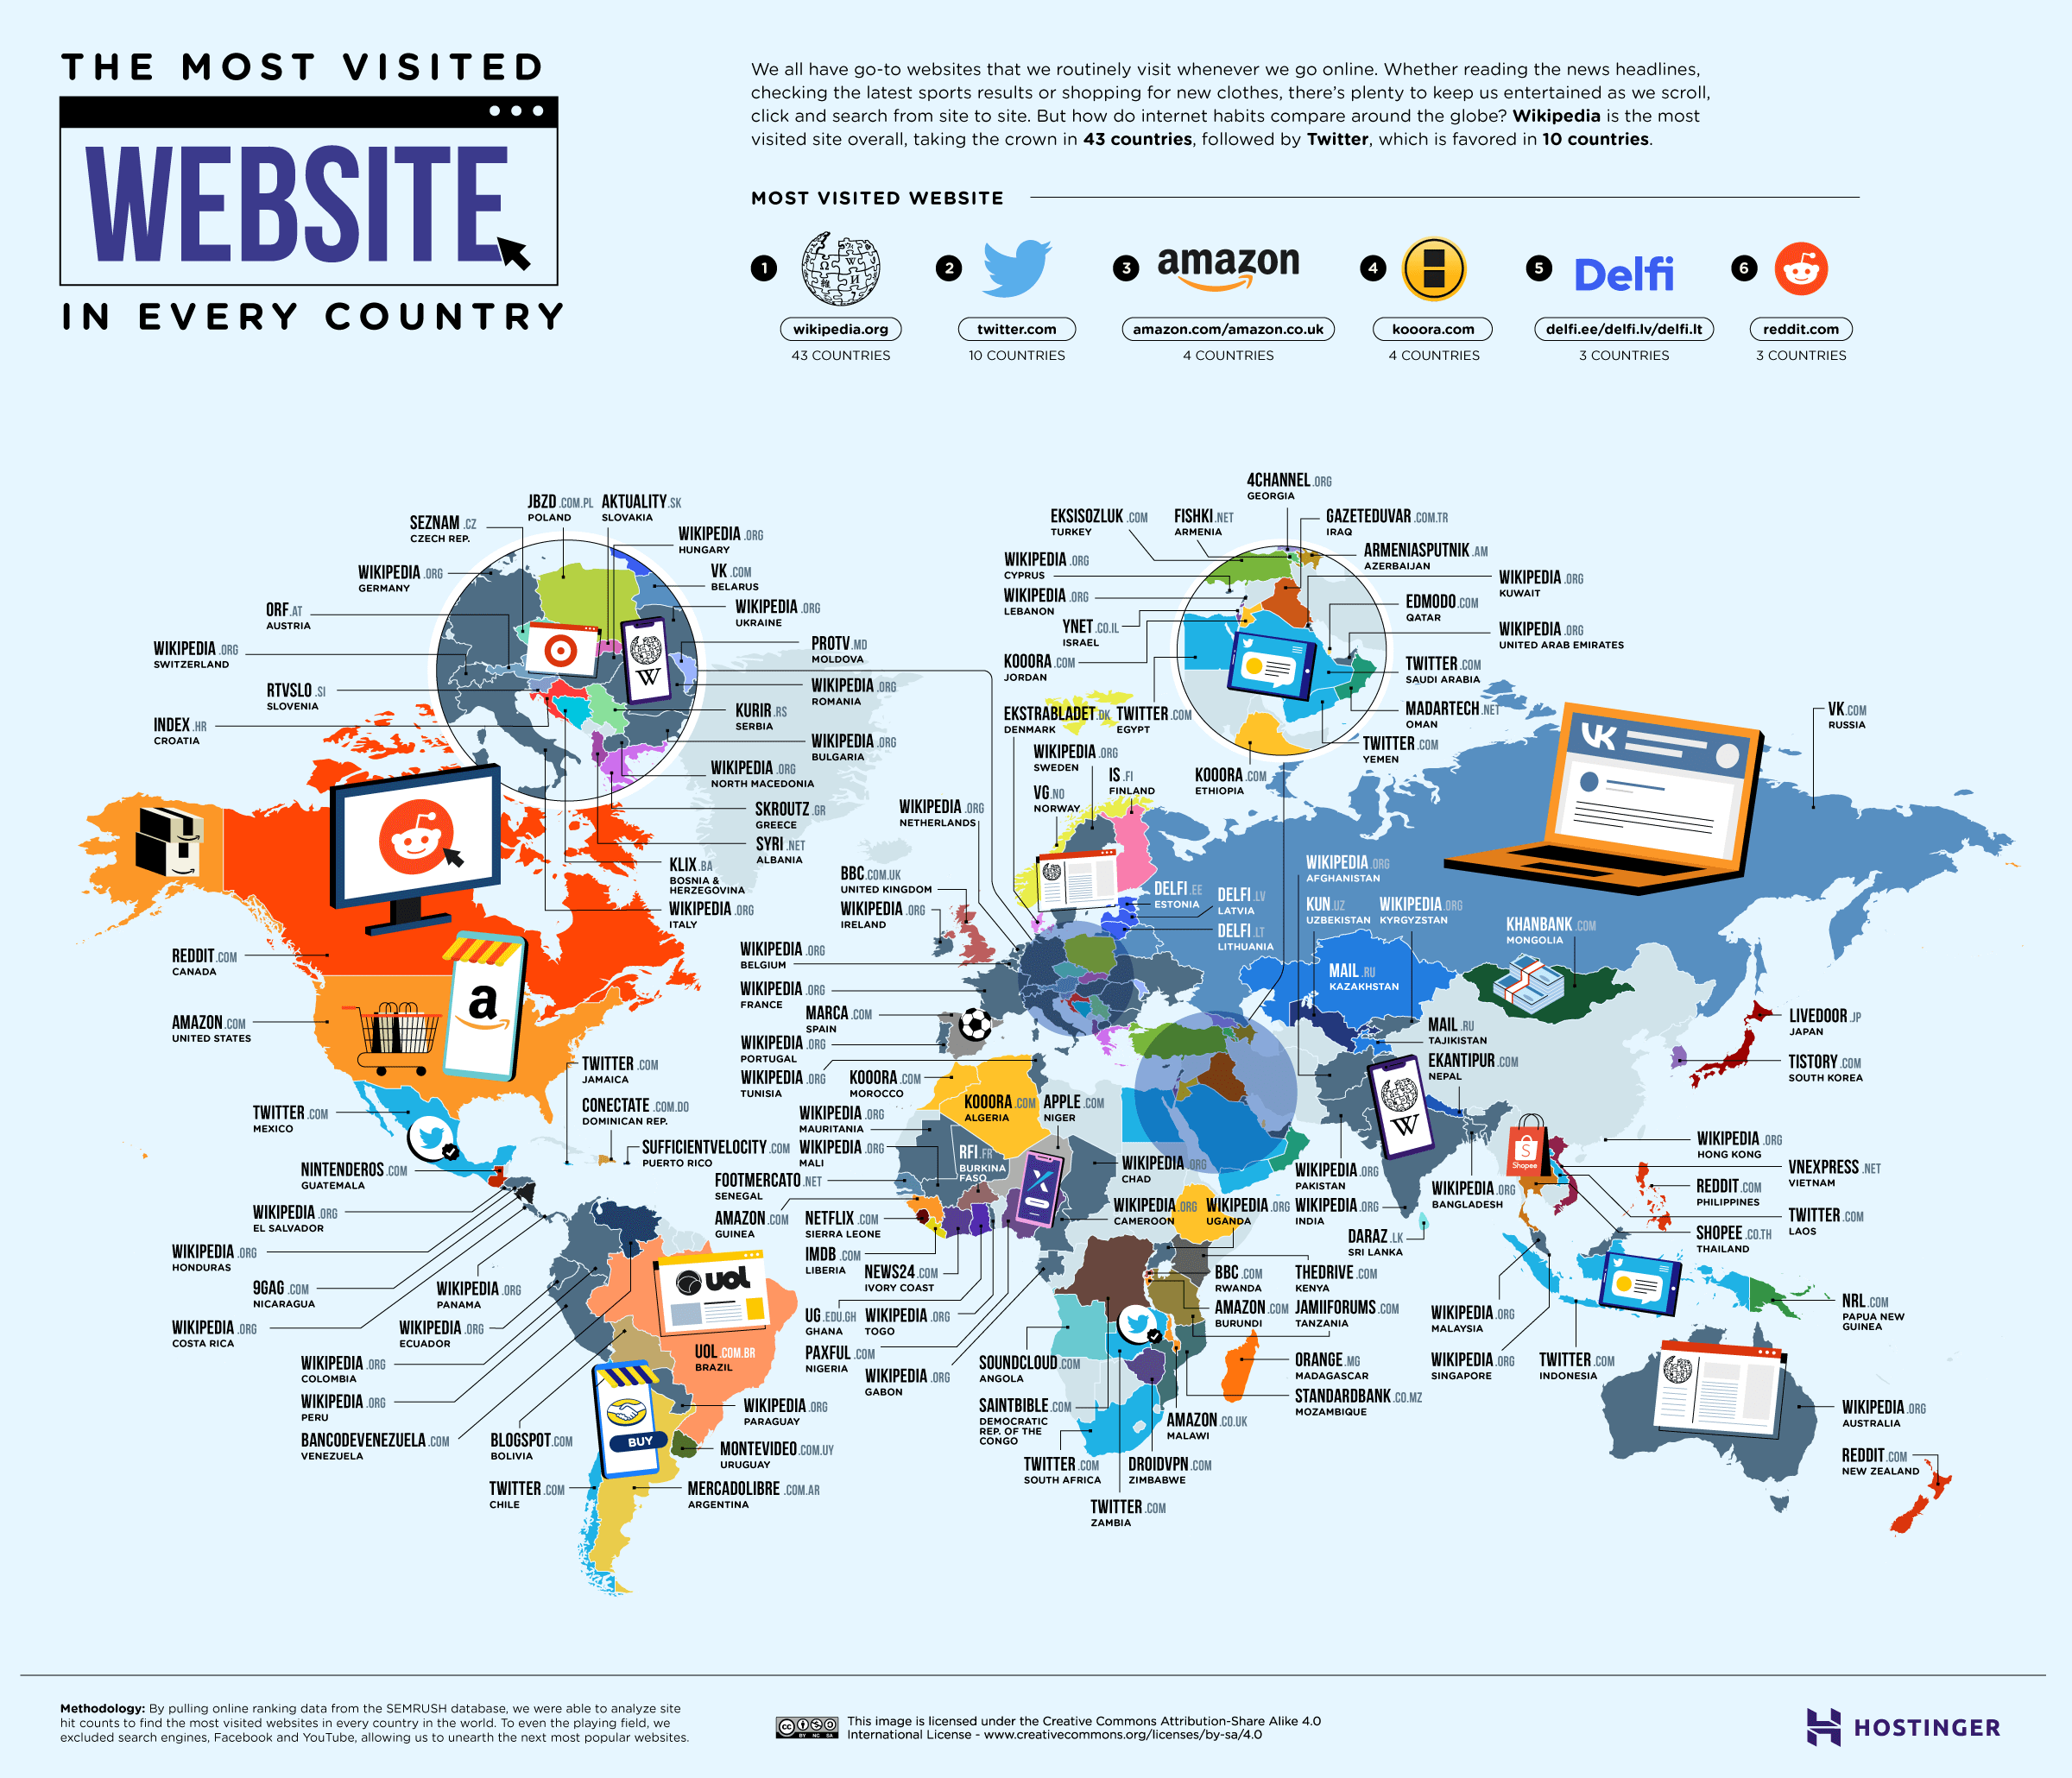 Les sites web les plus populaires au monde © Hostinger